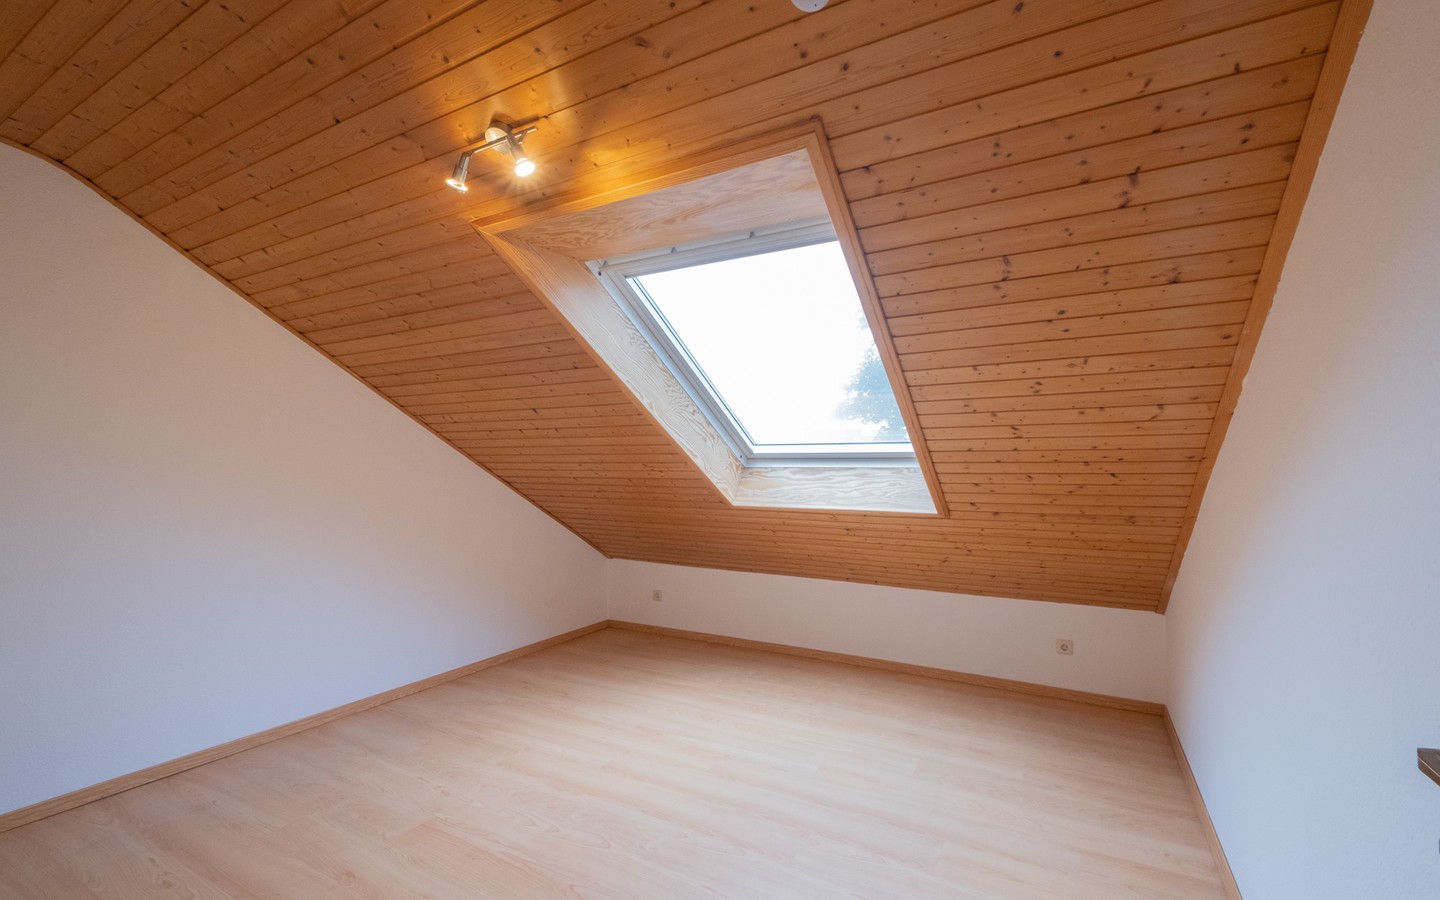 Zimmer 2 - Neues Eigenheim oder neue Kapitalanlage: 2-Zimmer-Dachwohnung in Leimen - sofort bezugsfrei!